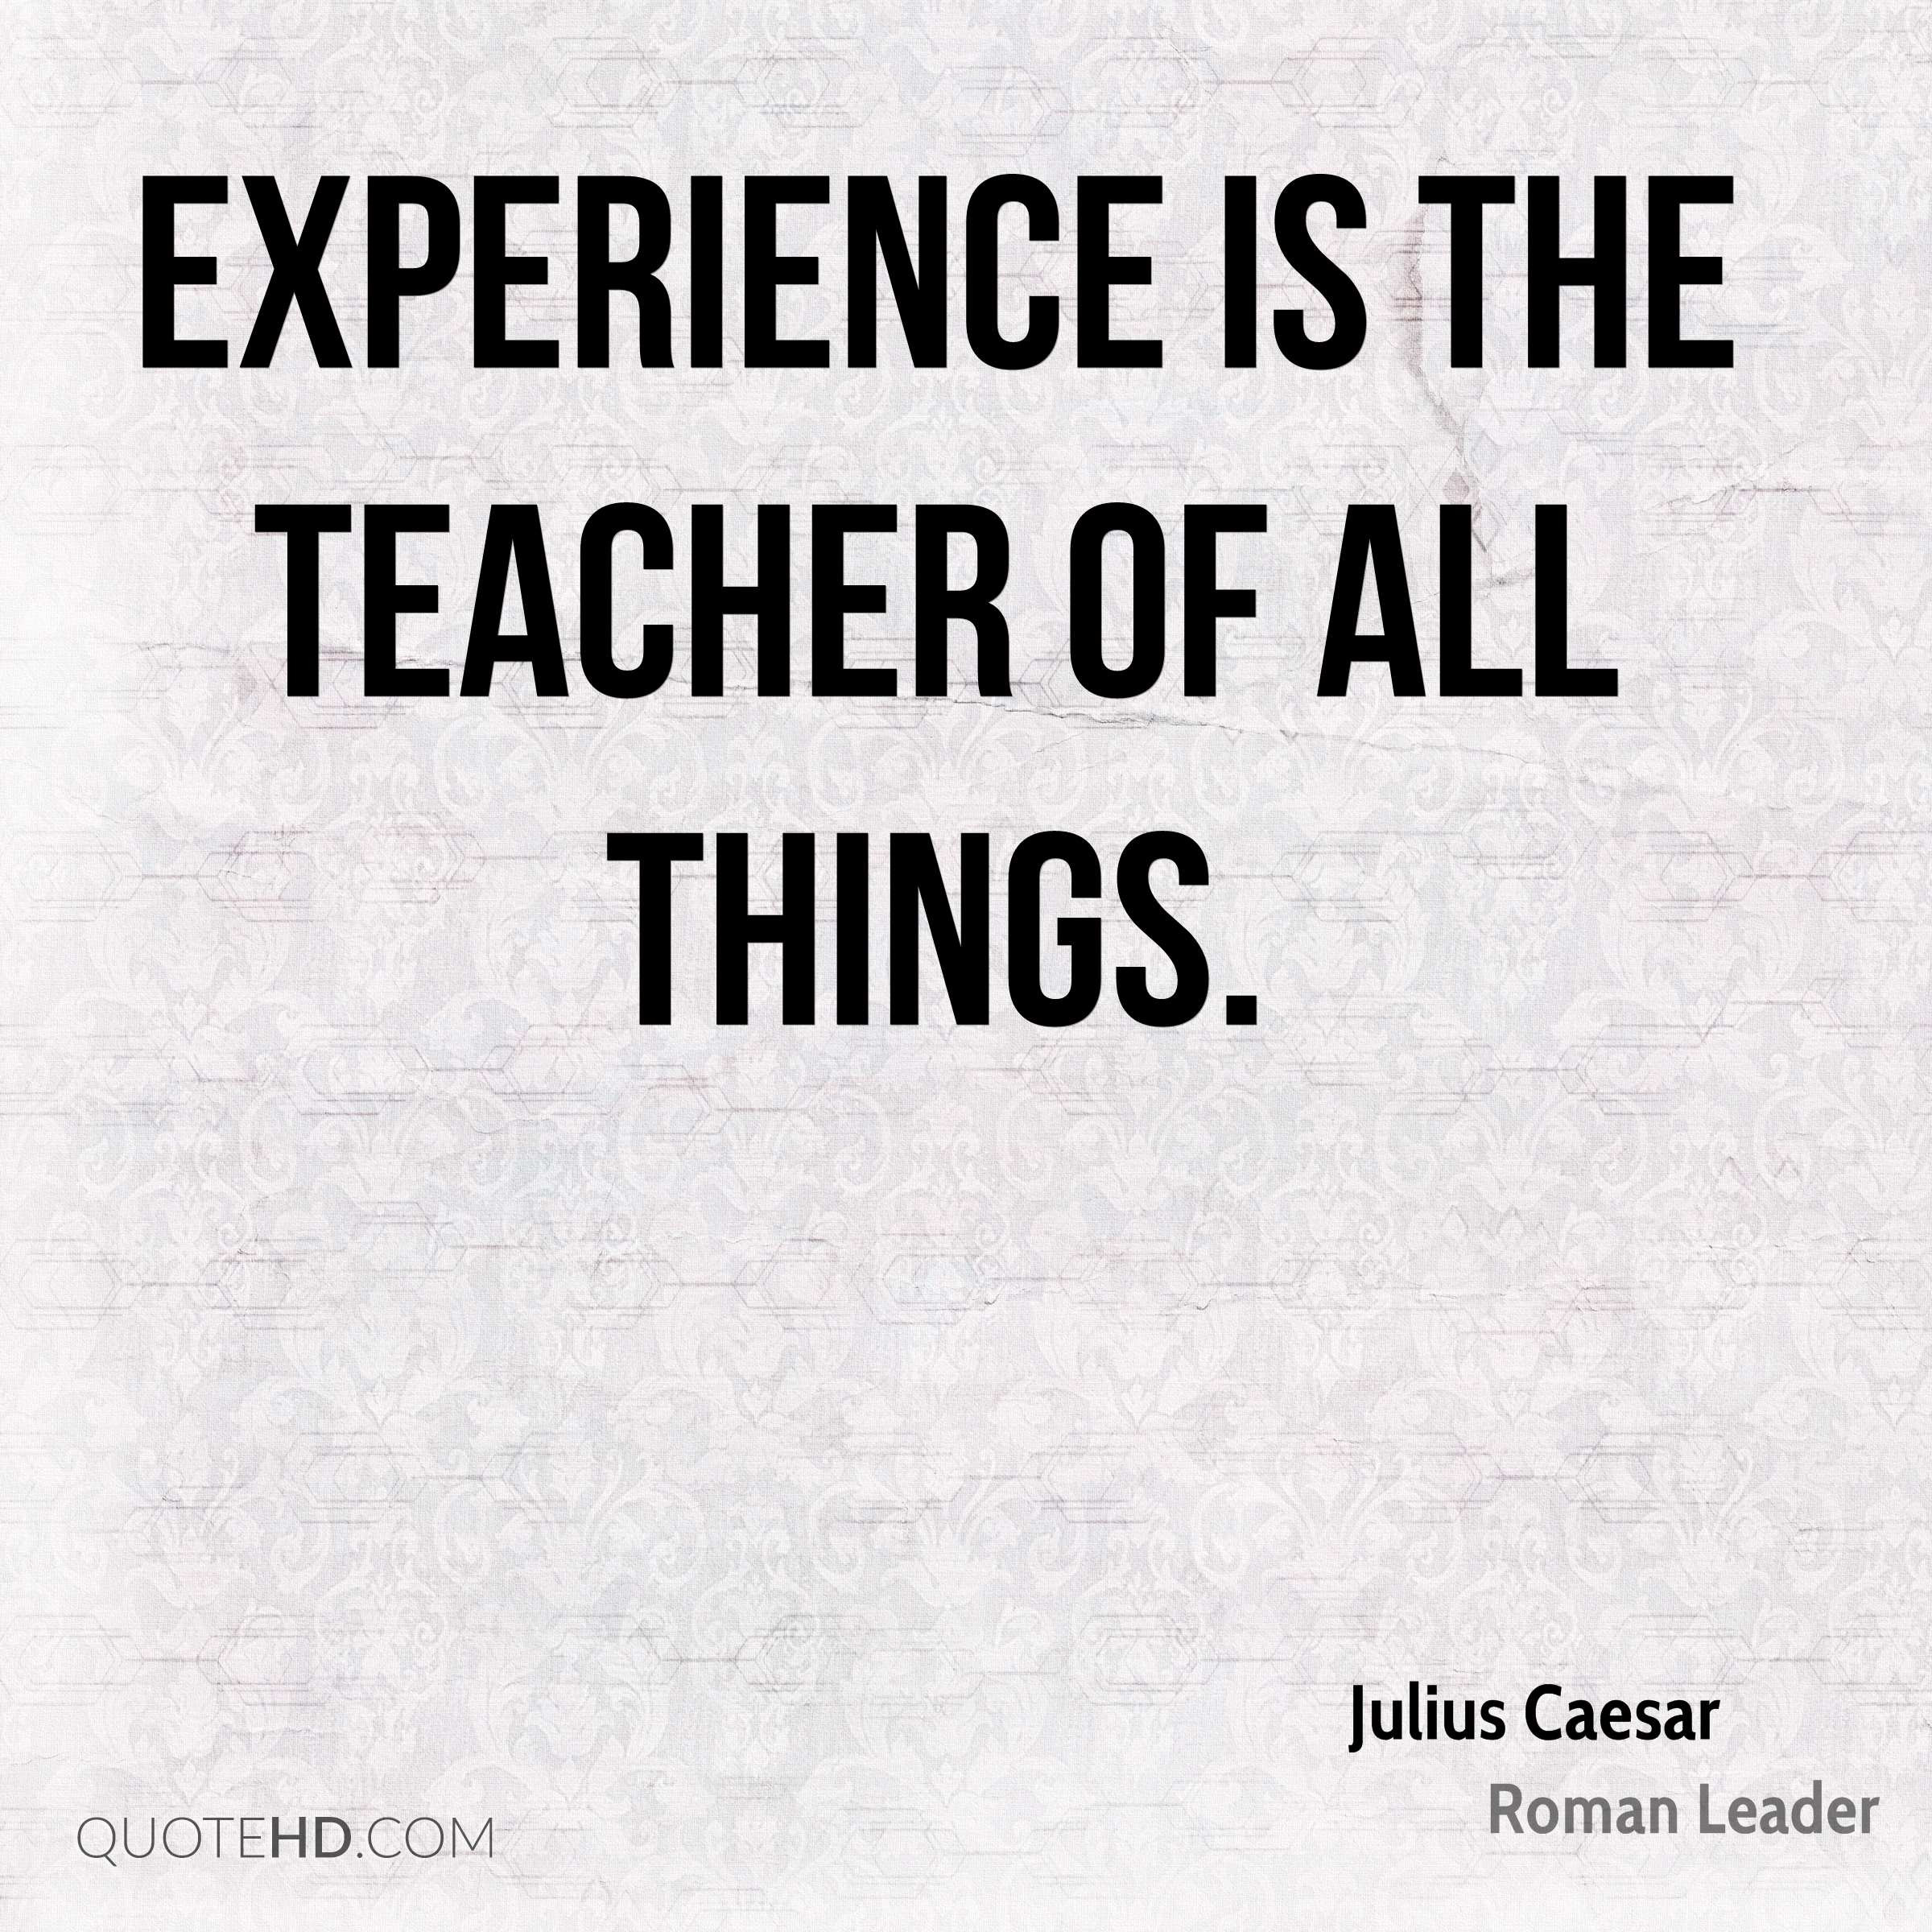 Julius Caesar Leadership Quotes
 Julius Caesar Experience Quotes